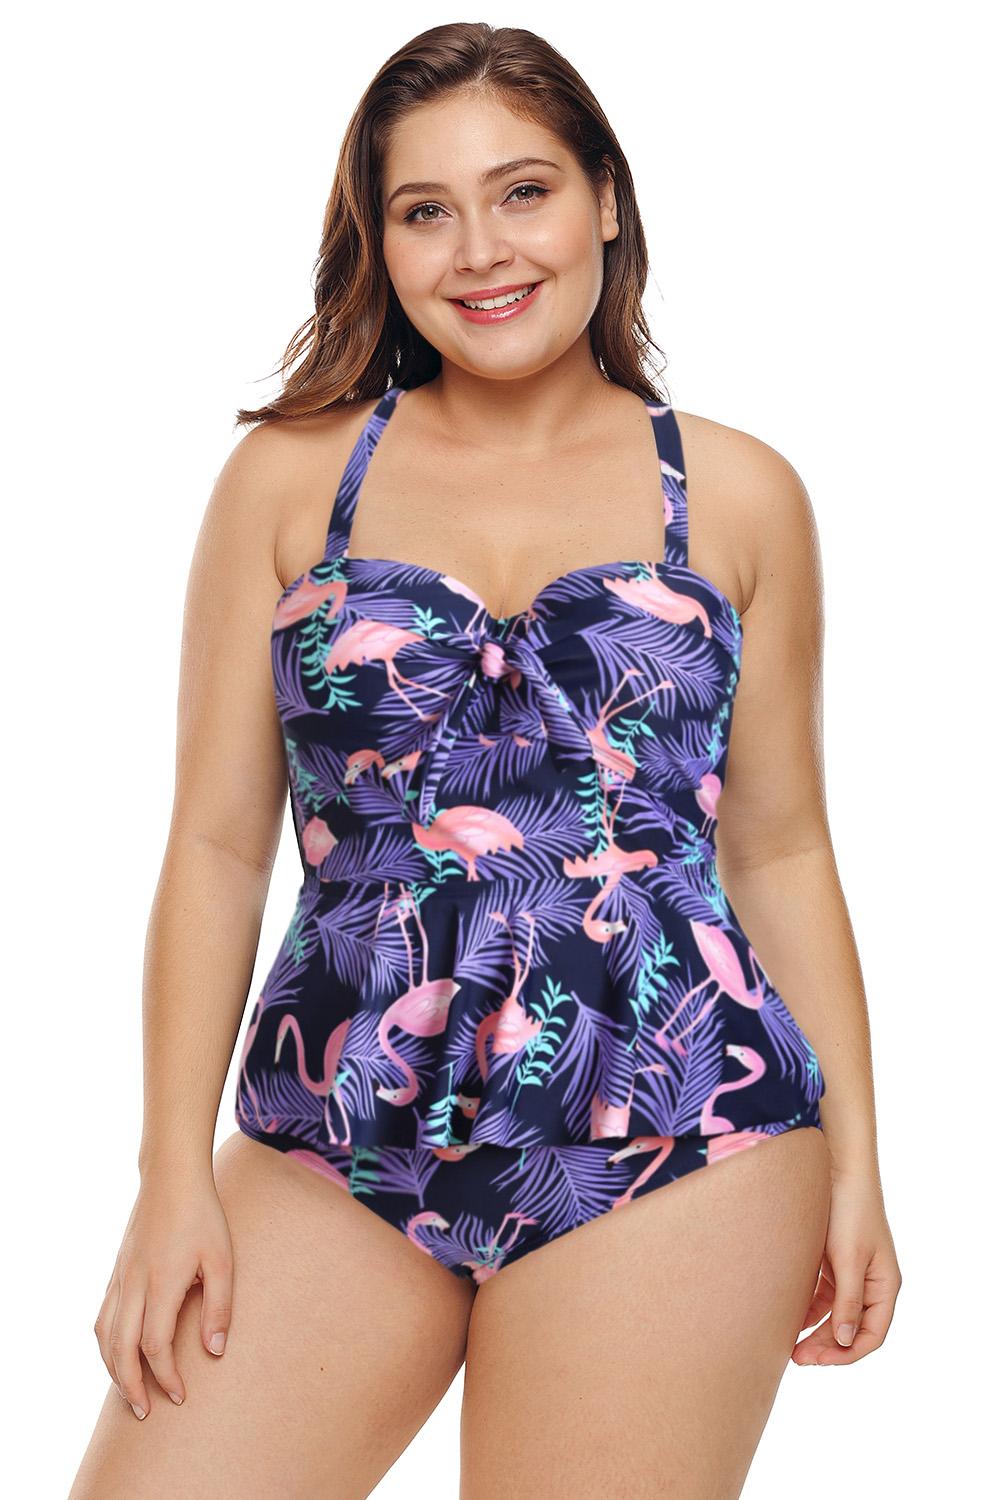 wholesale plus size bathing suits